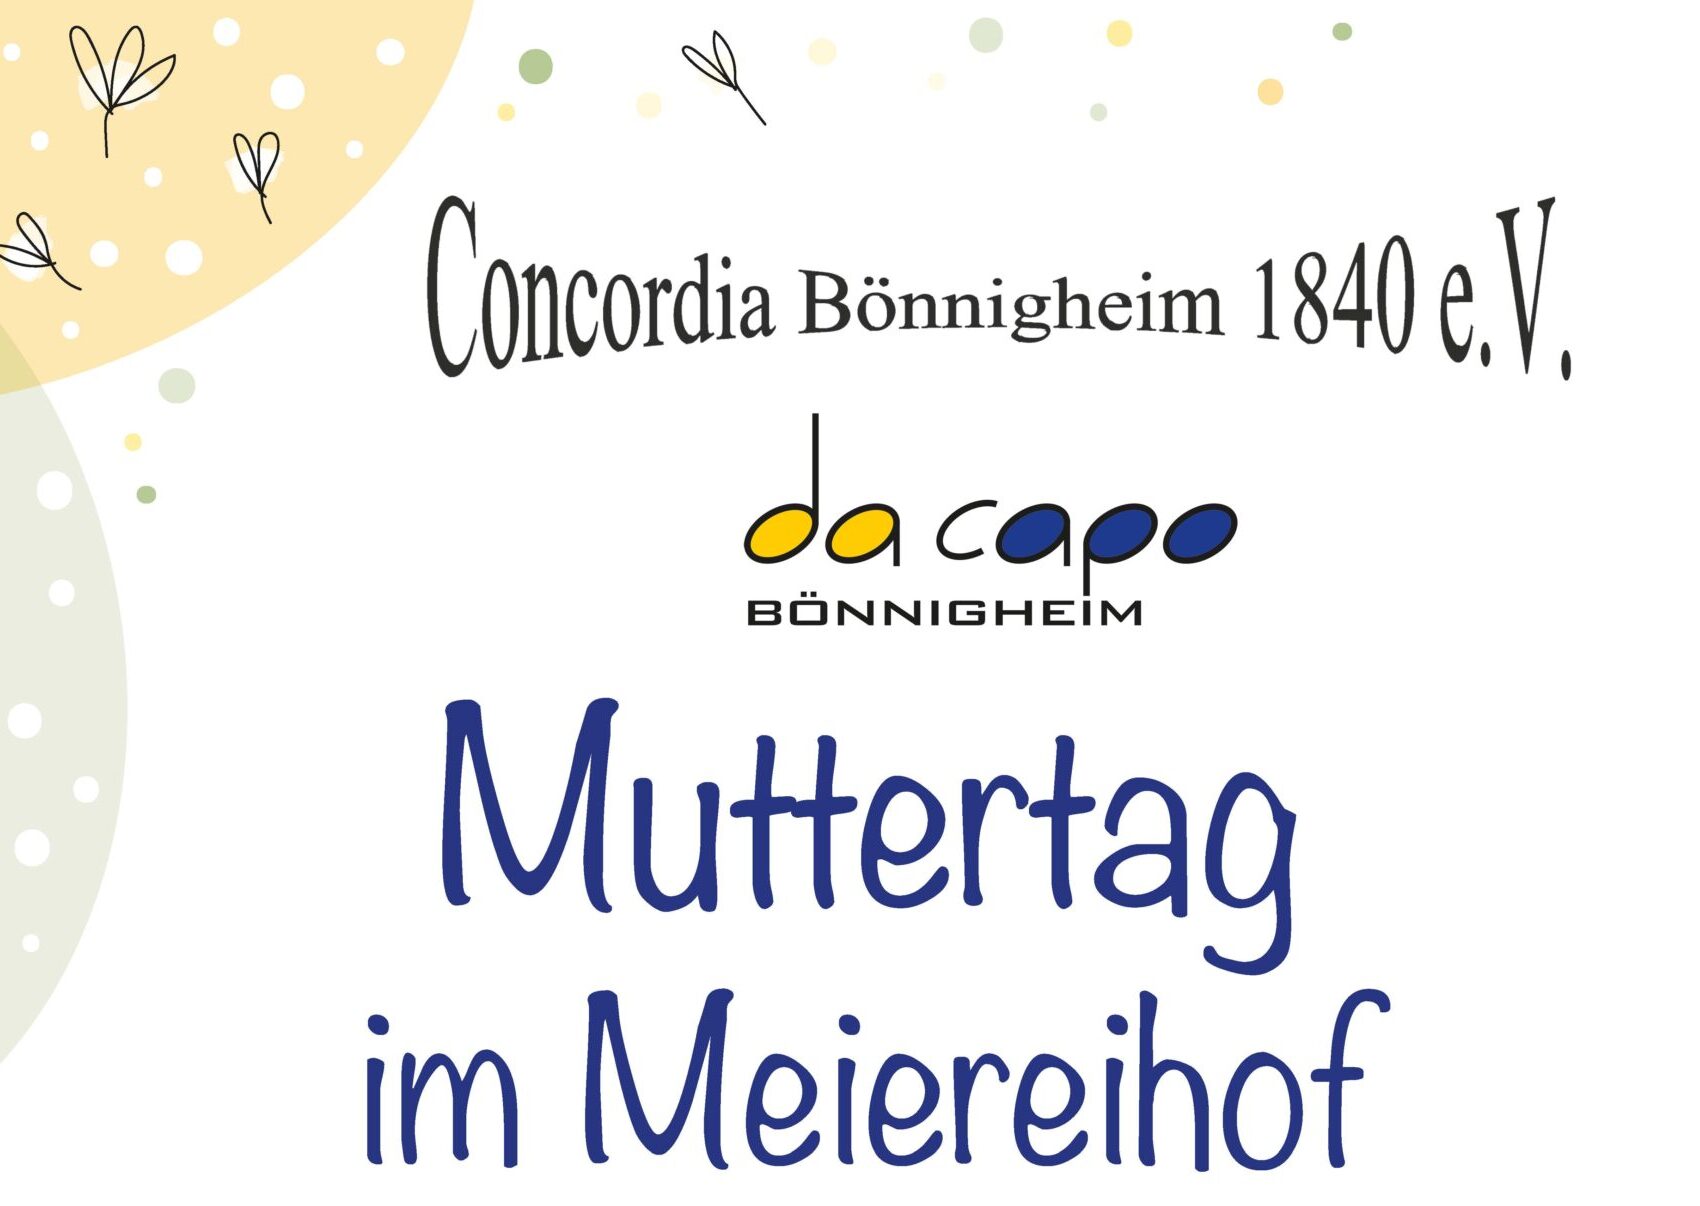 Concordia Bönnigheim bewirtet im Meierhof am Muttertag